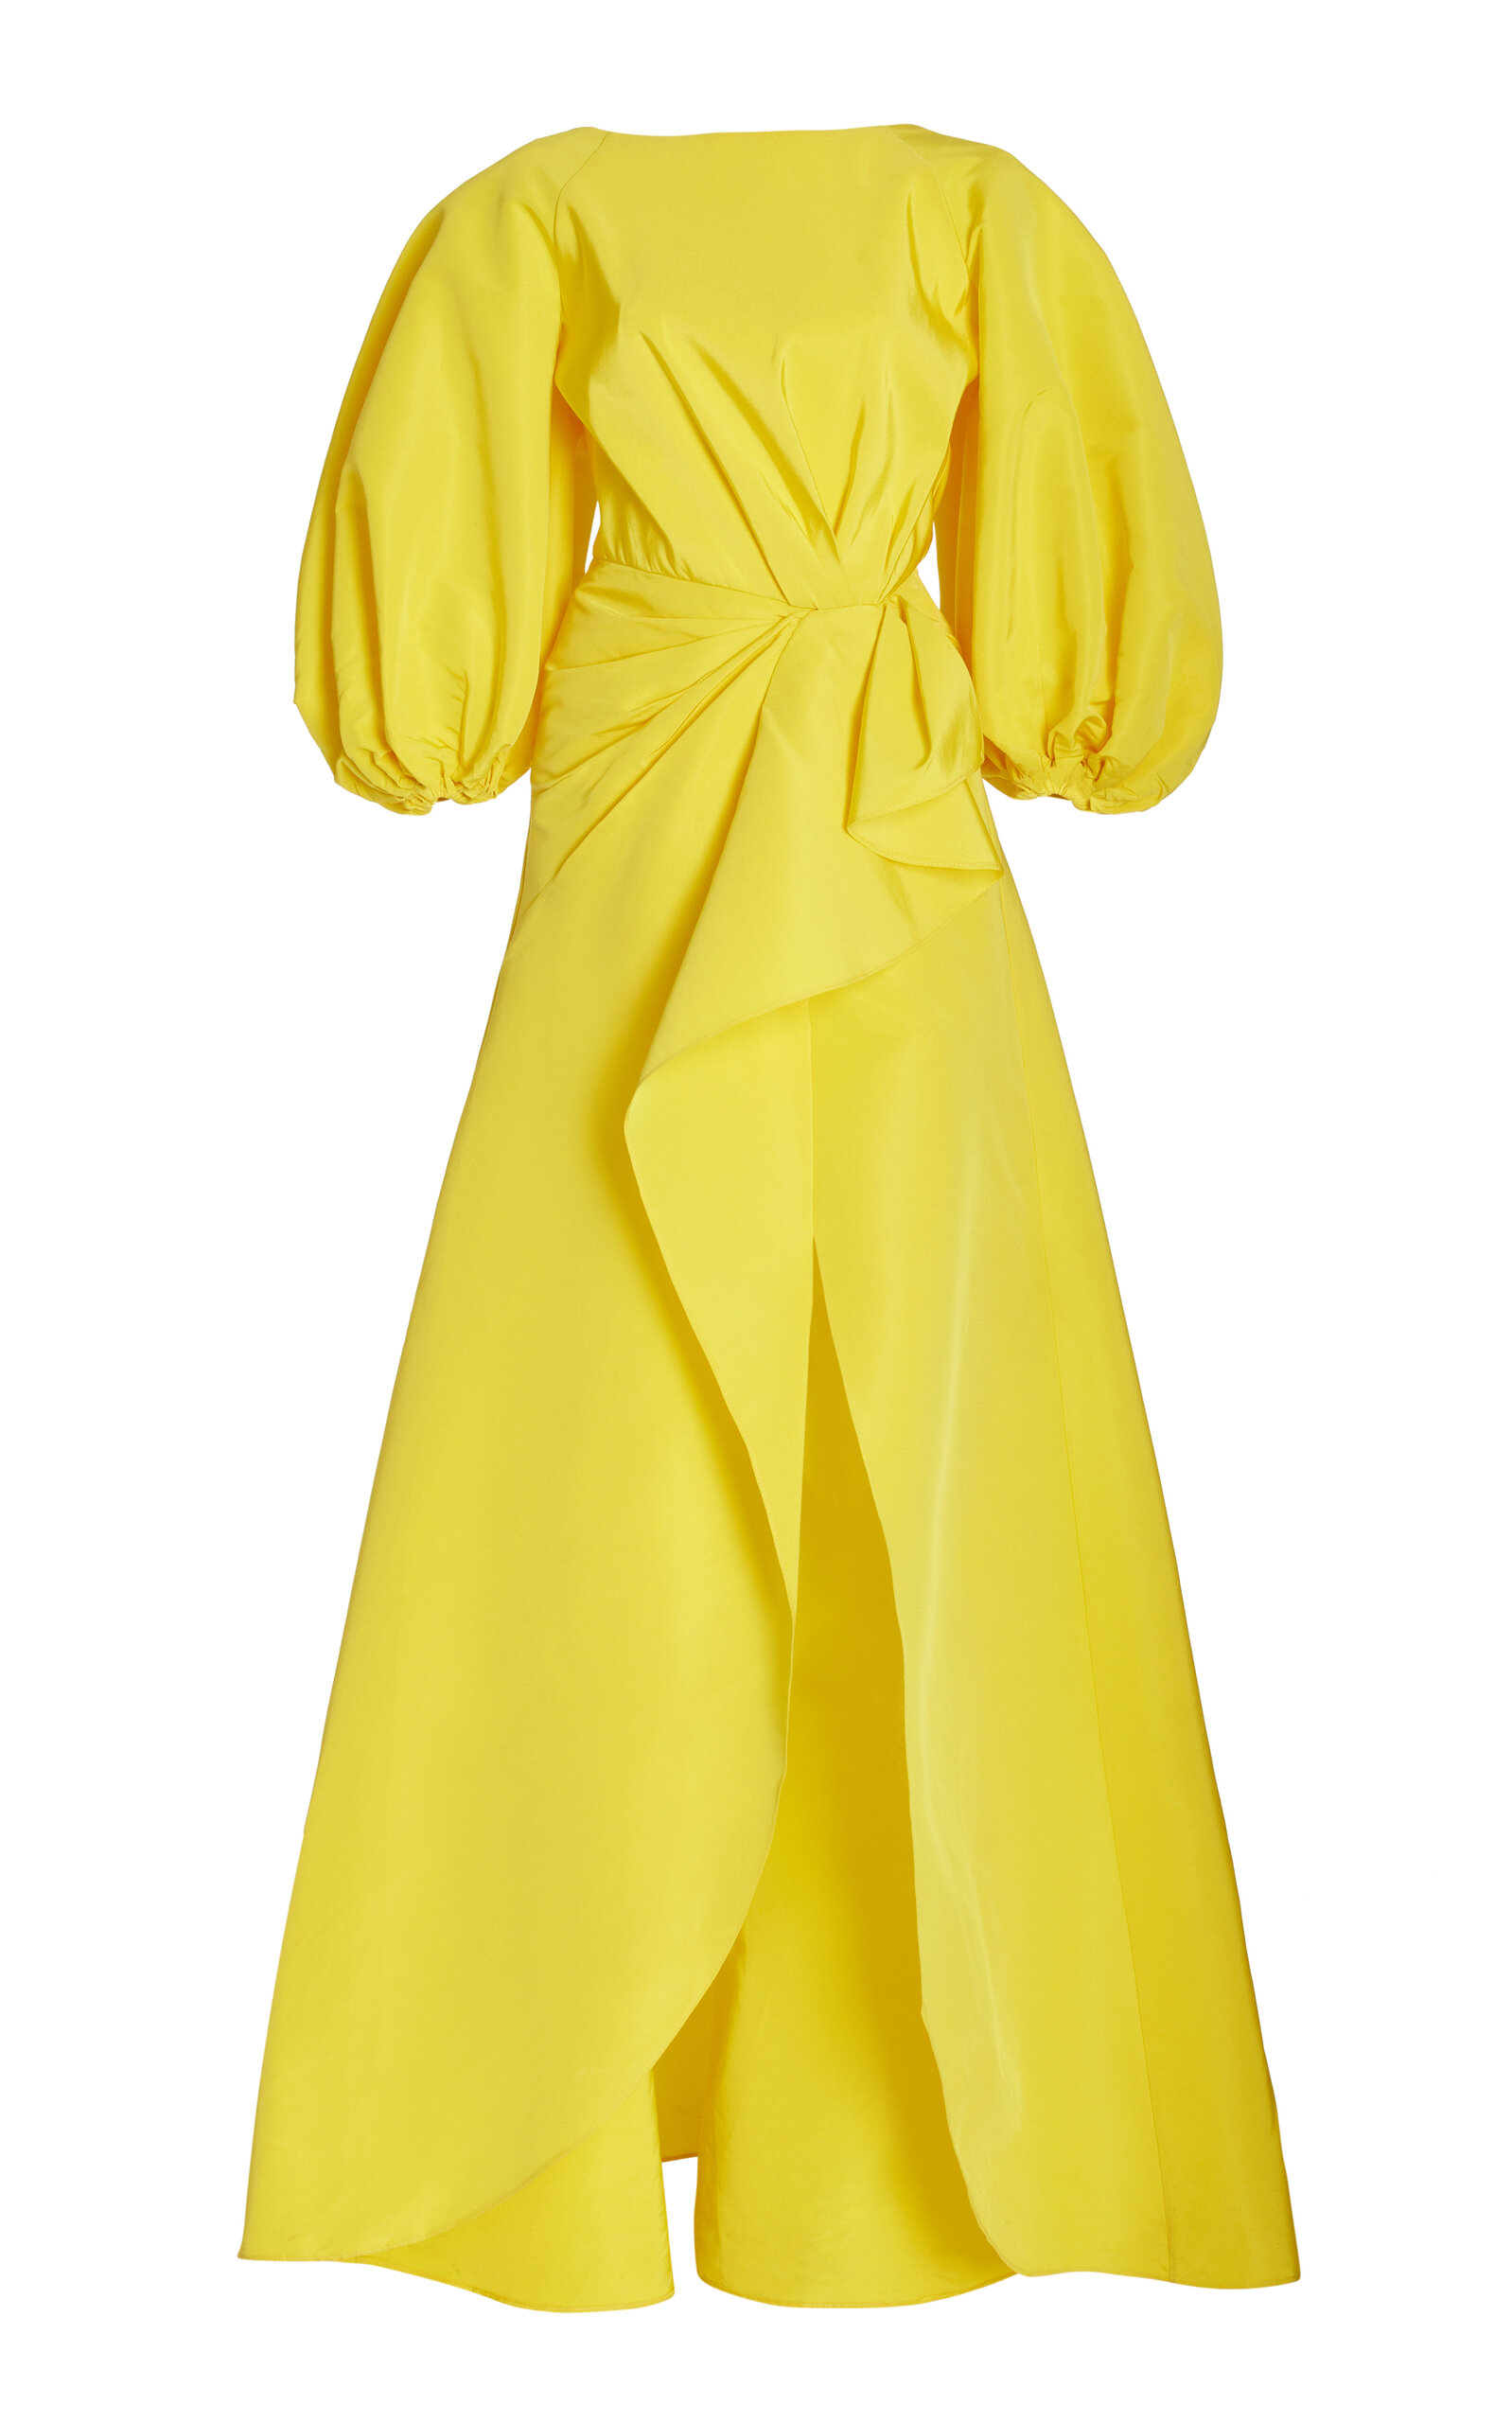 Carolina Herrera - Puff-Sleeve Silk Gown - Yellow - US 4 - Moda Operandi